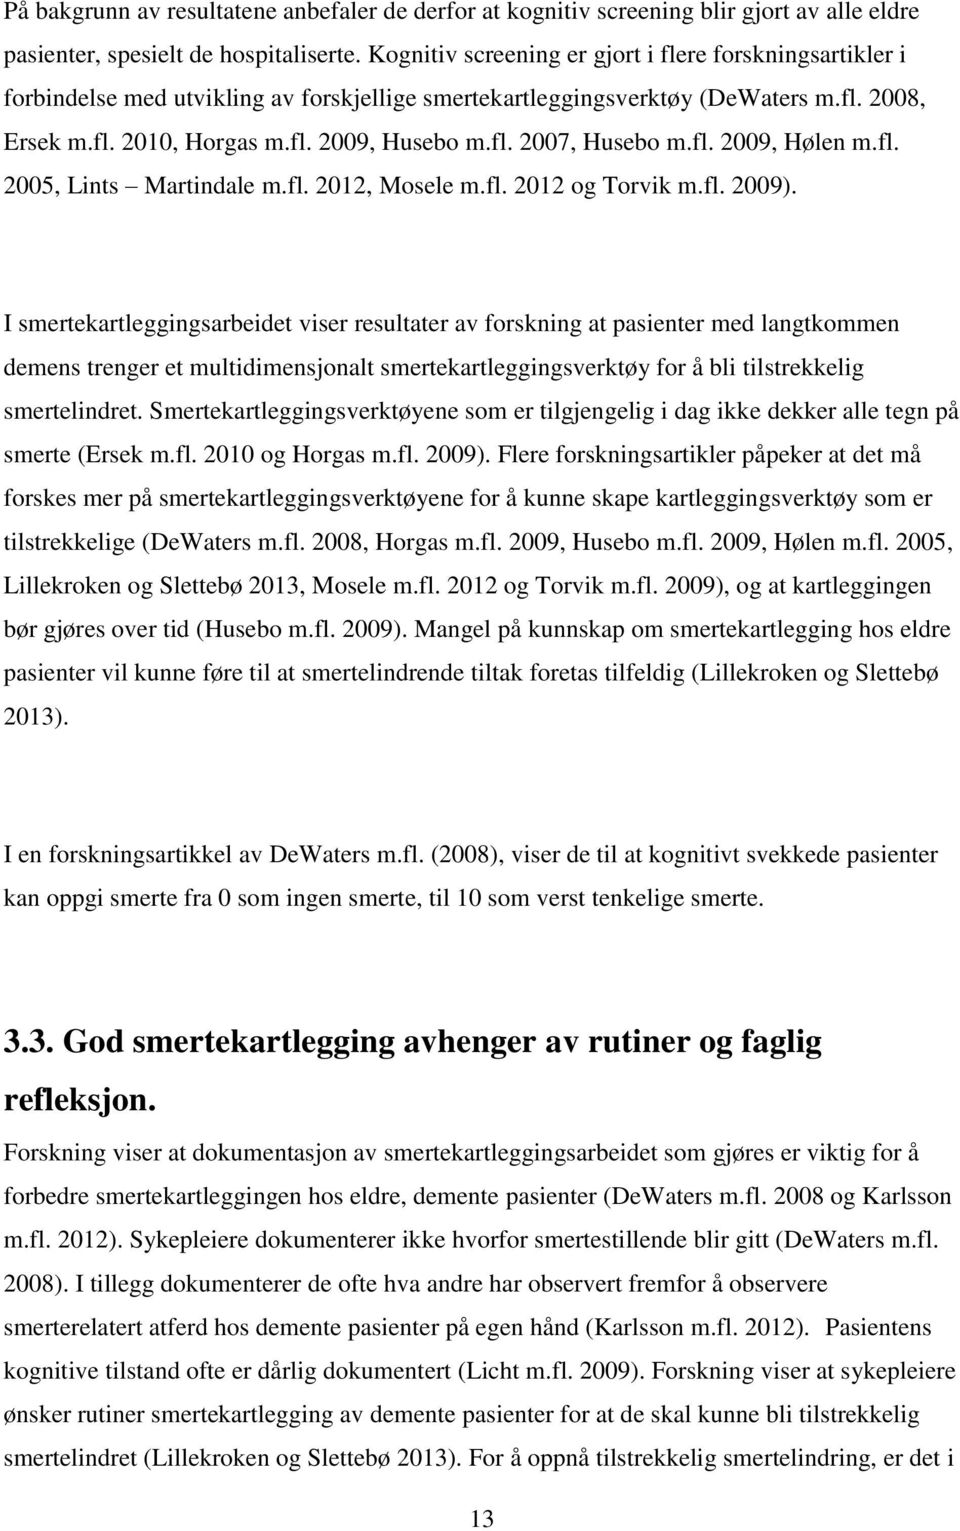 fl. 2009, Hølen m.fl. 2005, Lints Martindale m.fl. 2012, Mosele m.fl. 2012 og Torvik m.fl. 2009).